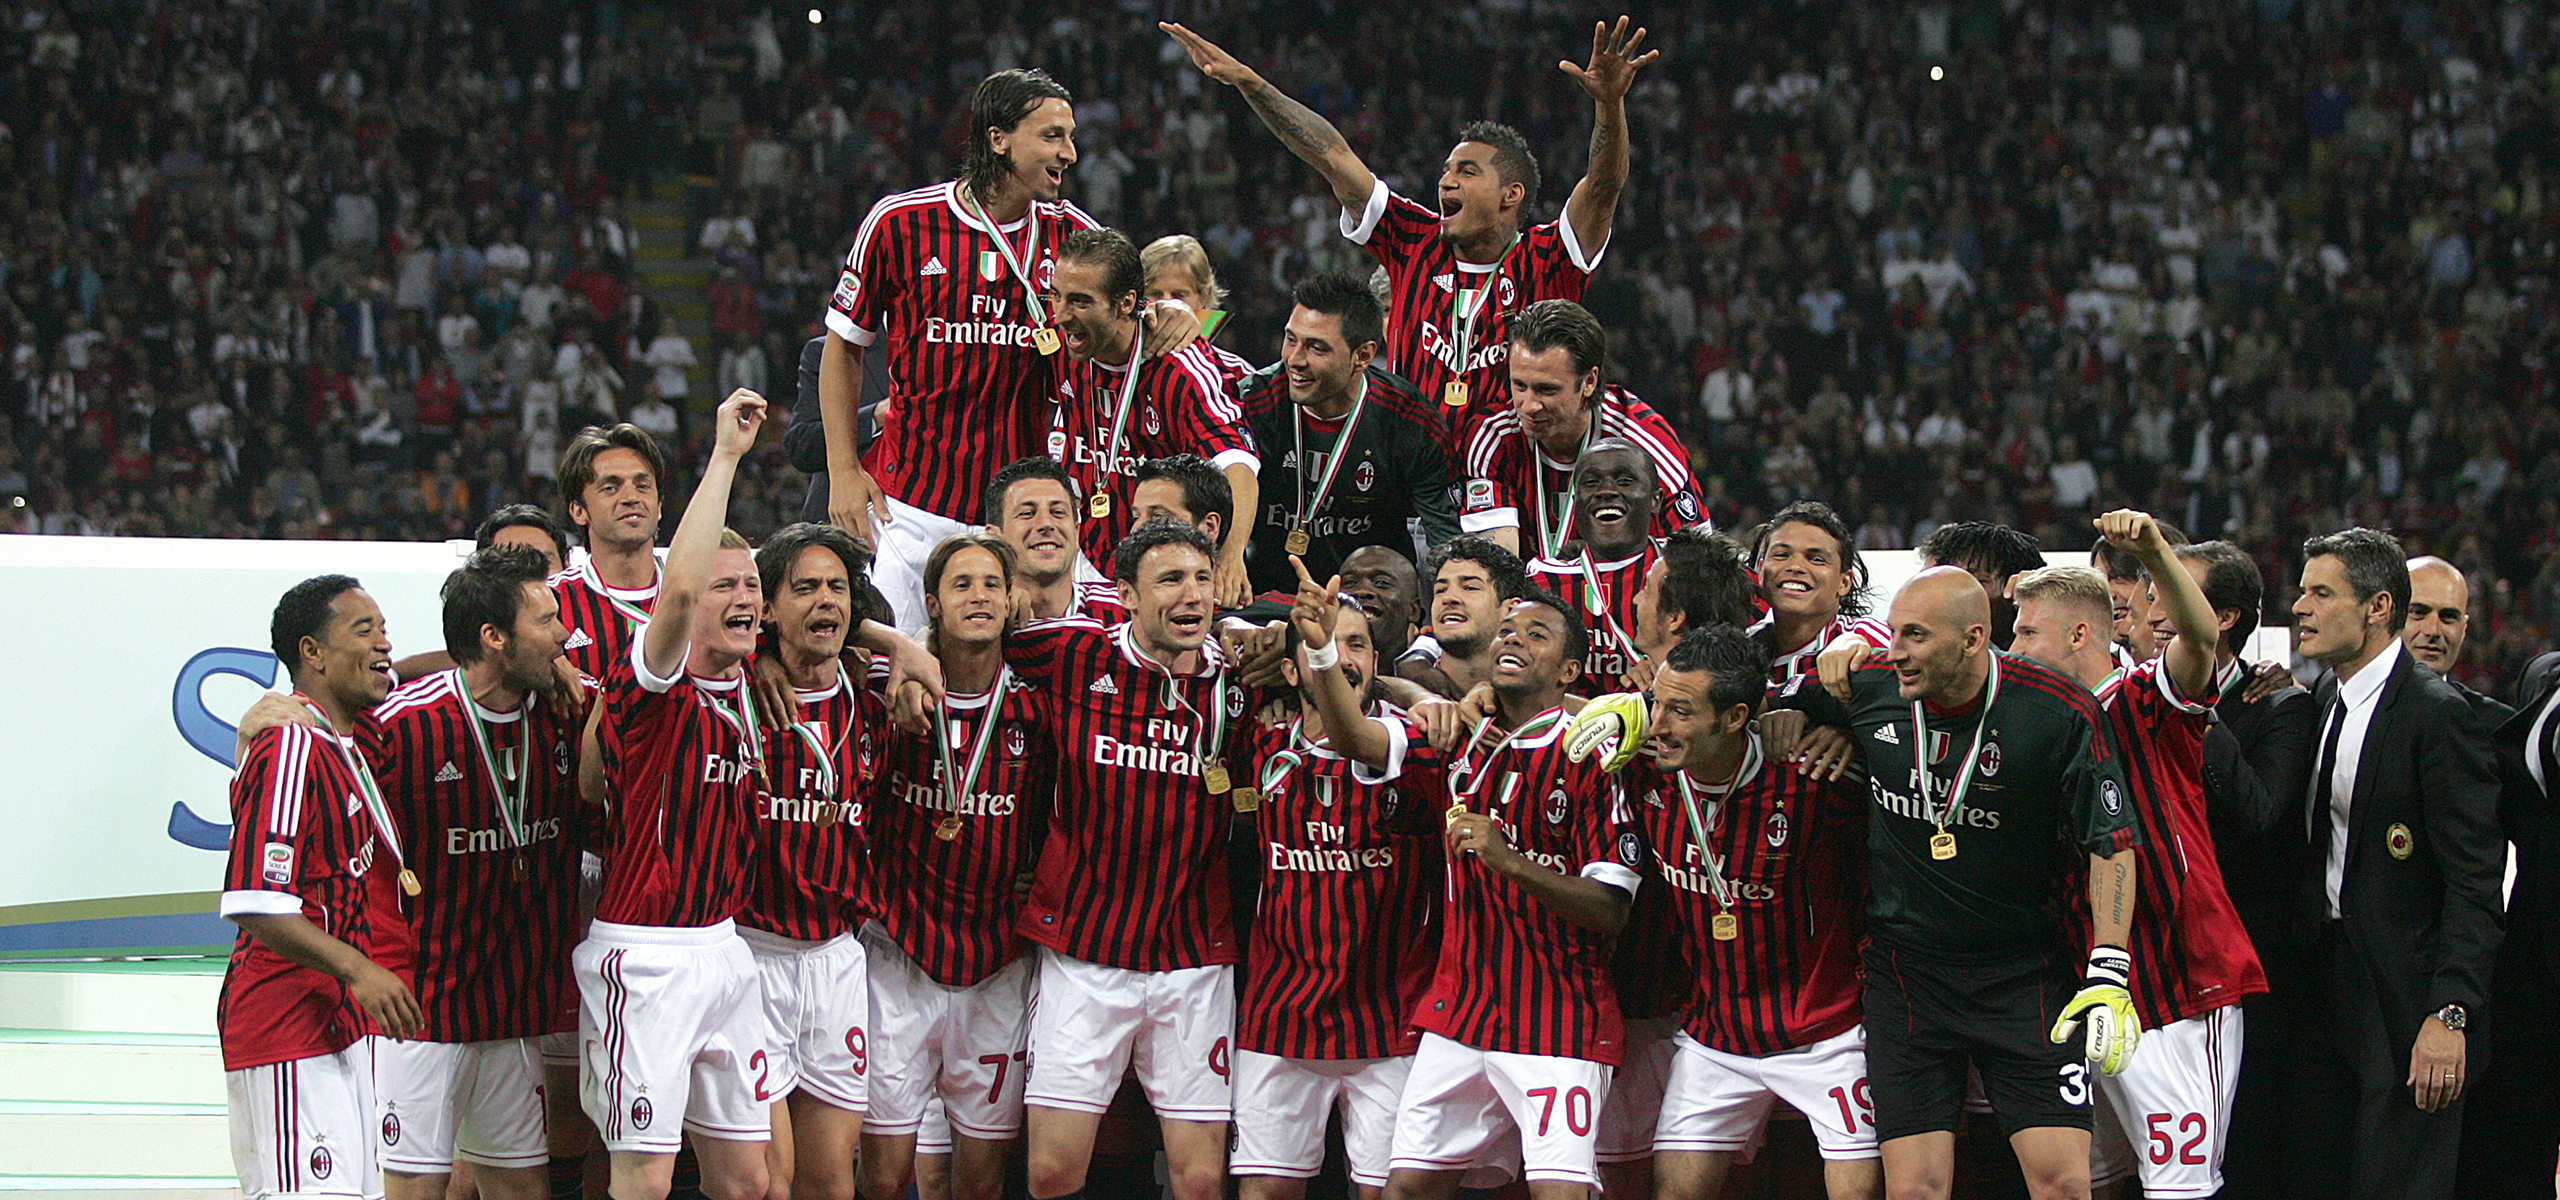 2010/11 details | Milan